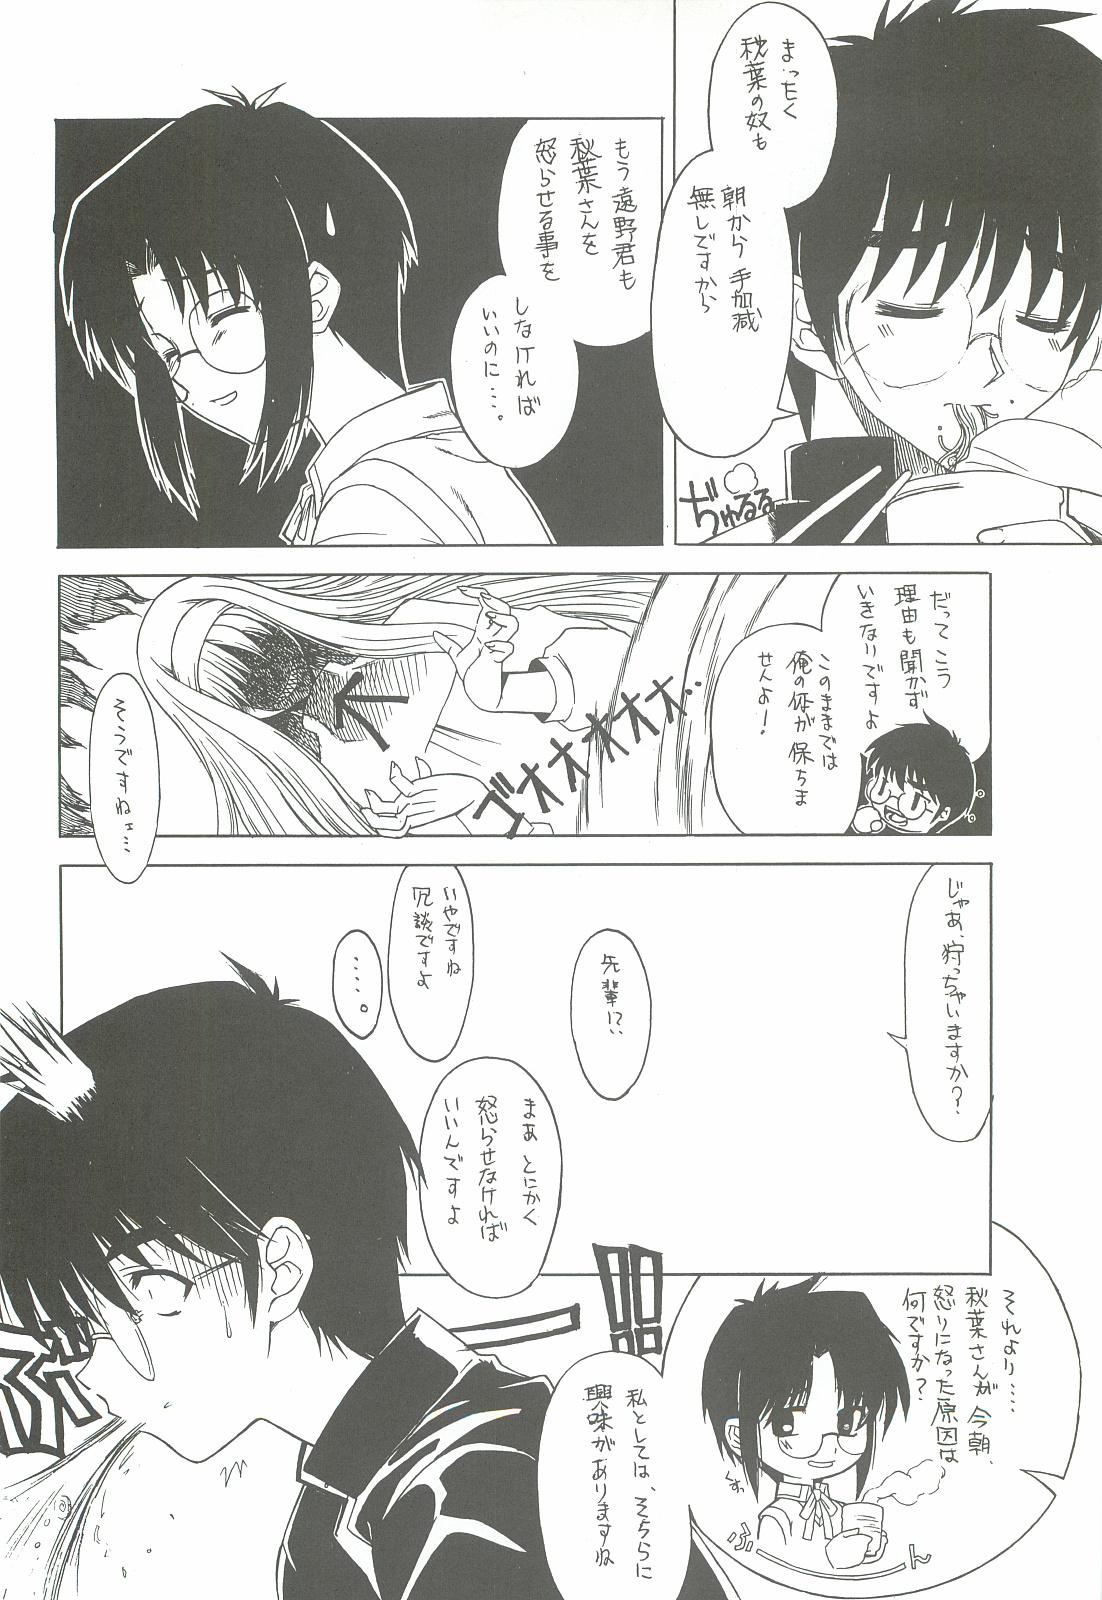 Chupando Sougetsu no Kimi Eien no Getsukan - Tsukihime Little - Page 11